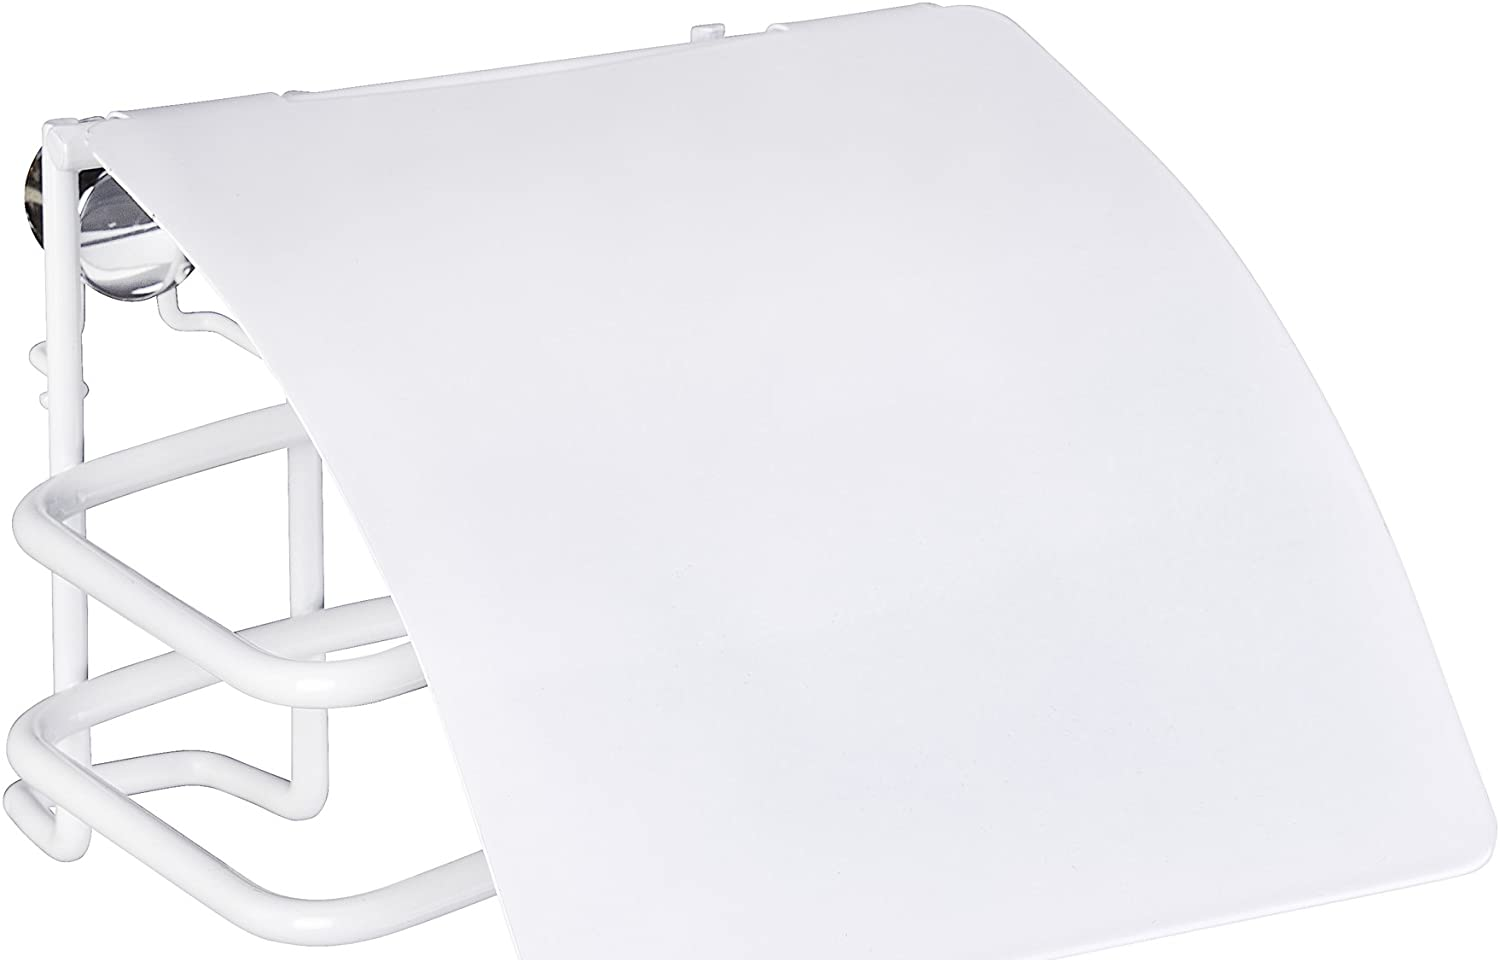 Toilettenpapierhalter mit Deckel Classic Plus - Rollenhalter mit hochwertigem Rostschutz, Stahl, 12.5 x 9 x 14 cm, Weiß